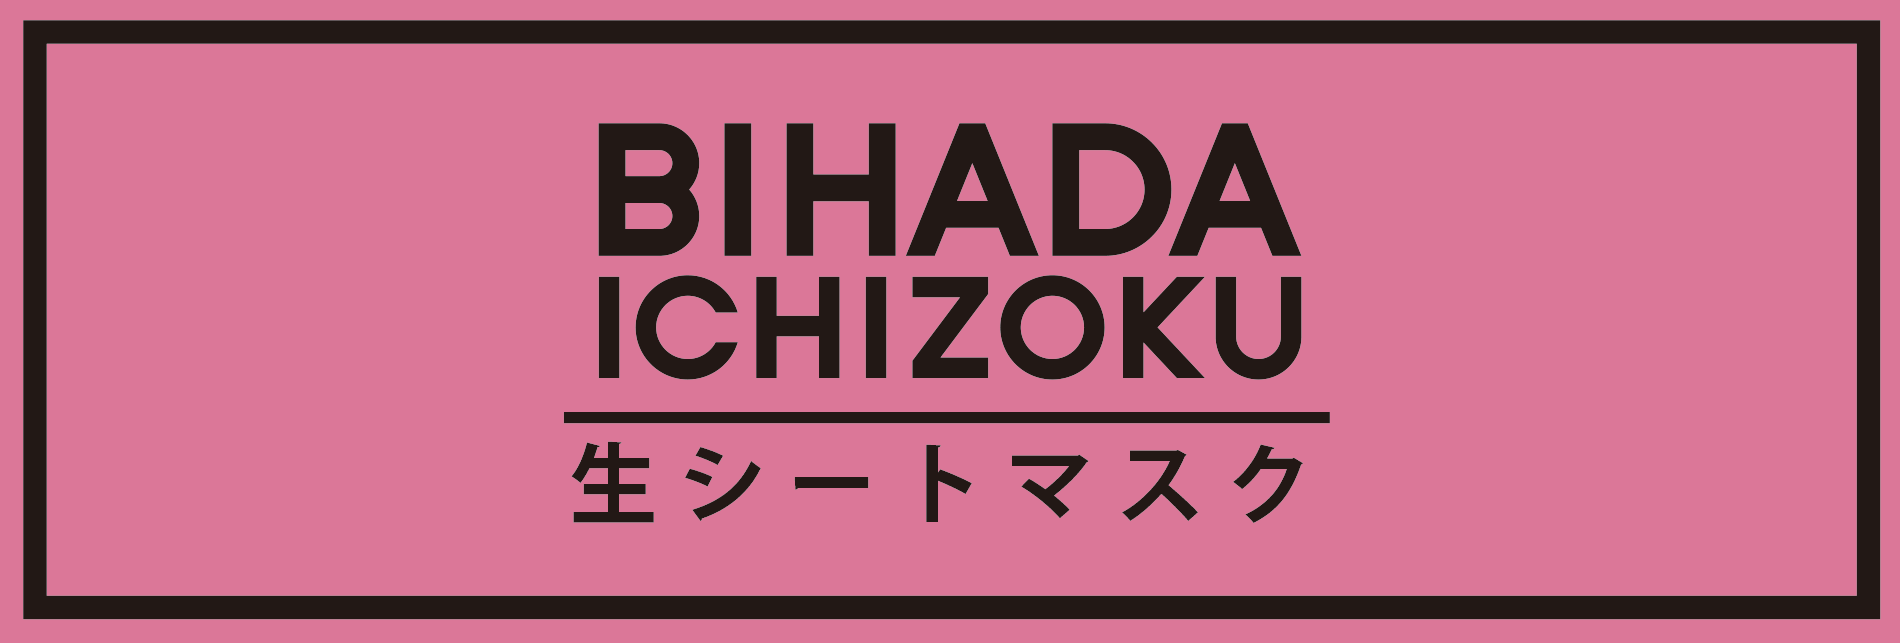 BIHADA ICHIZOKU 生シートマスク